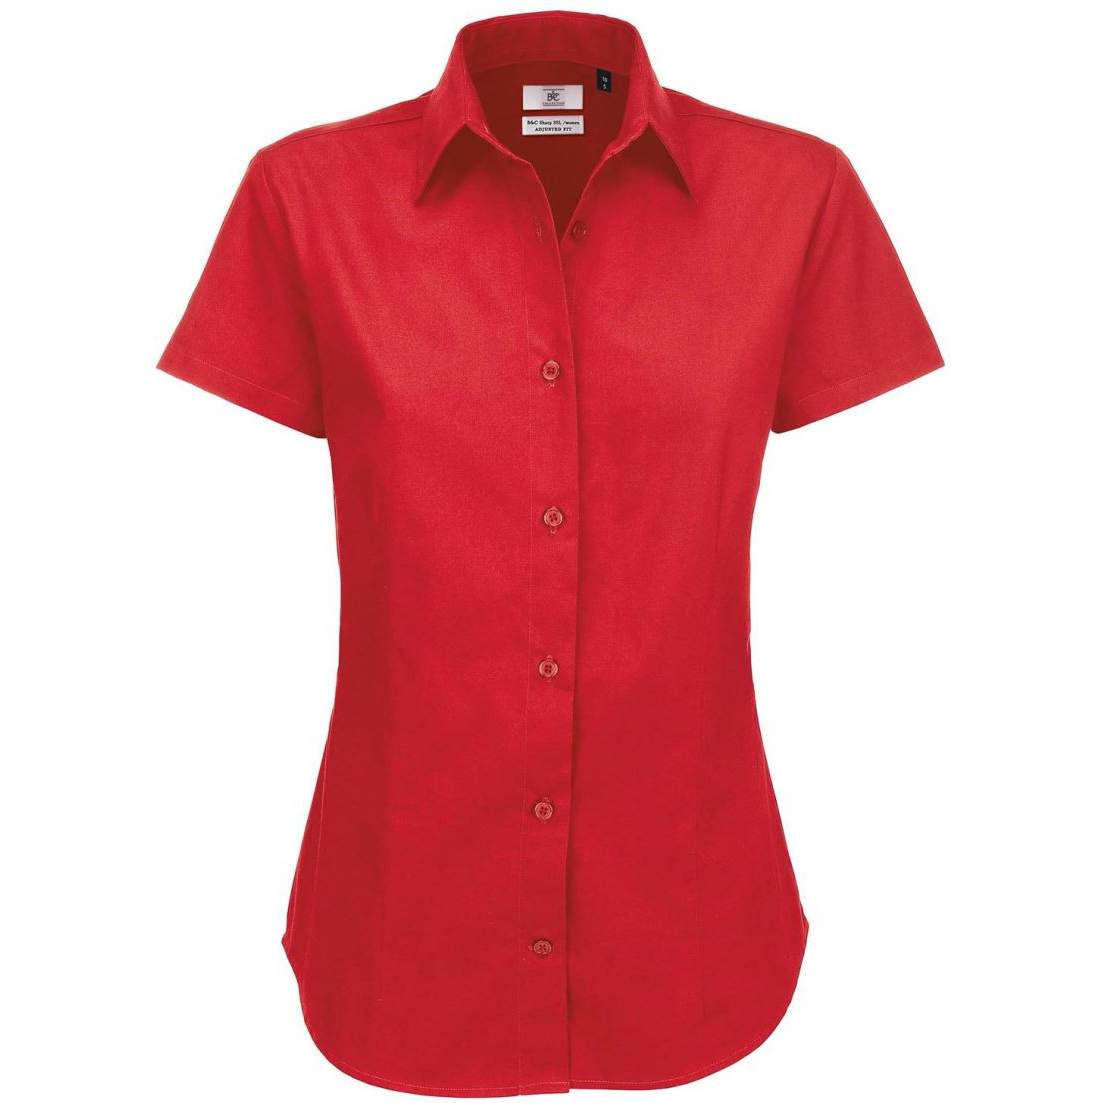 Dámská keprová košile B&C Sharp s krátkým rukávem - červená, XL